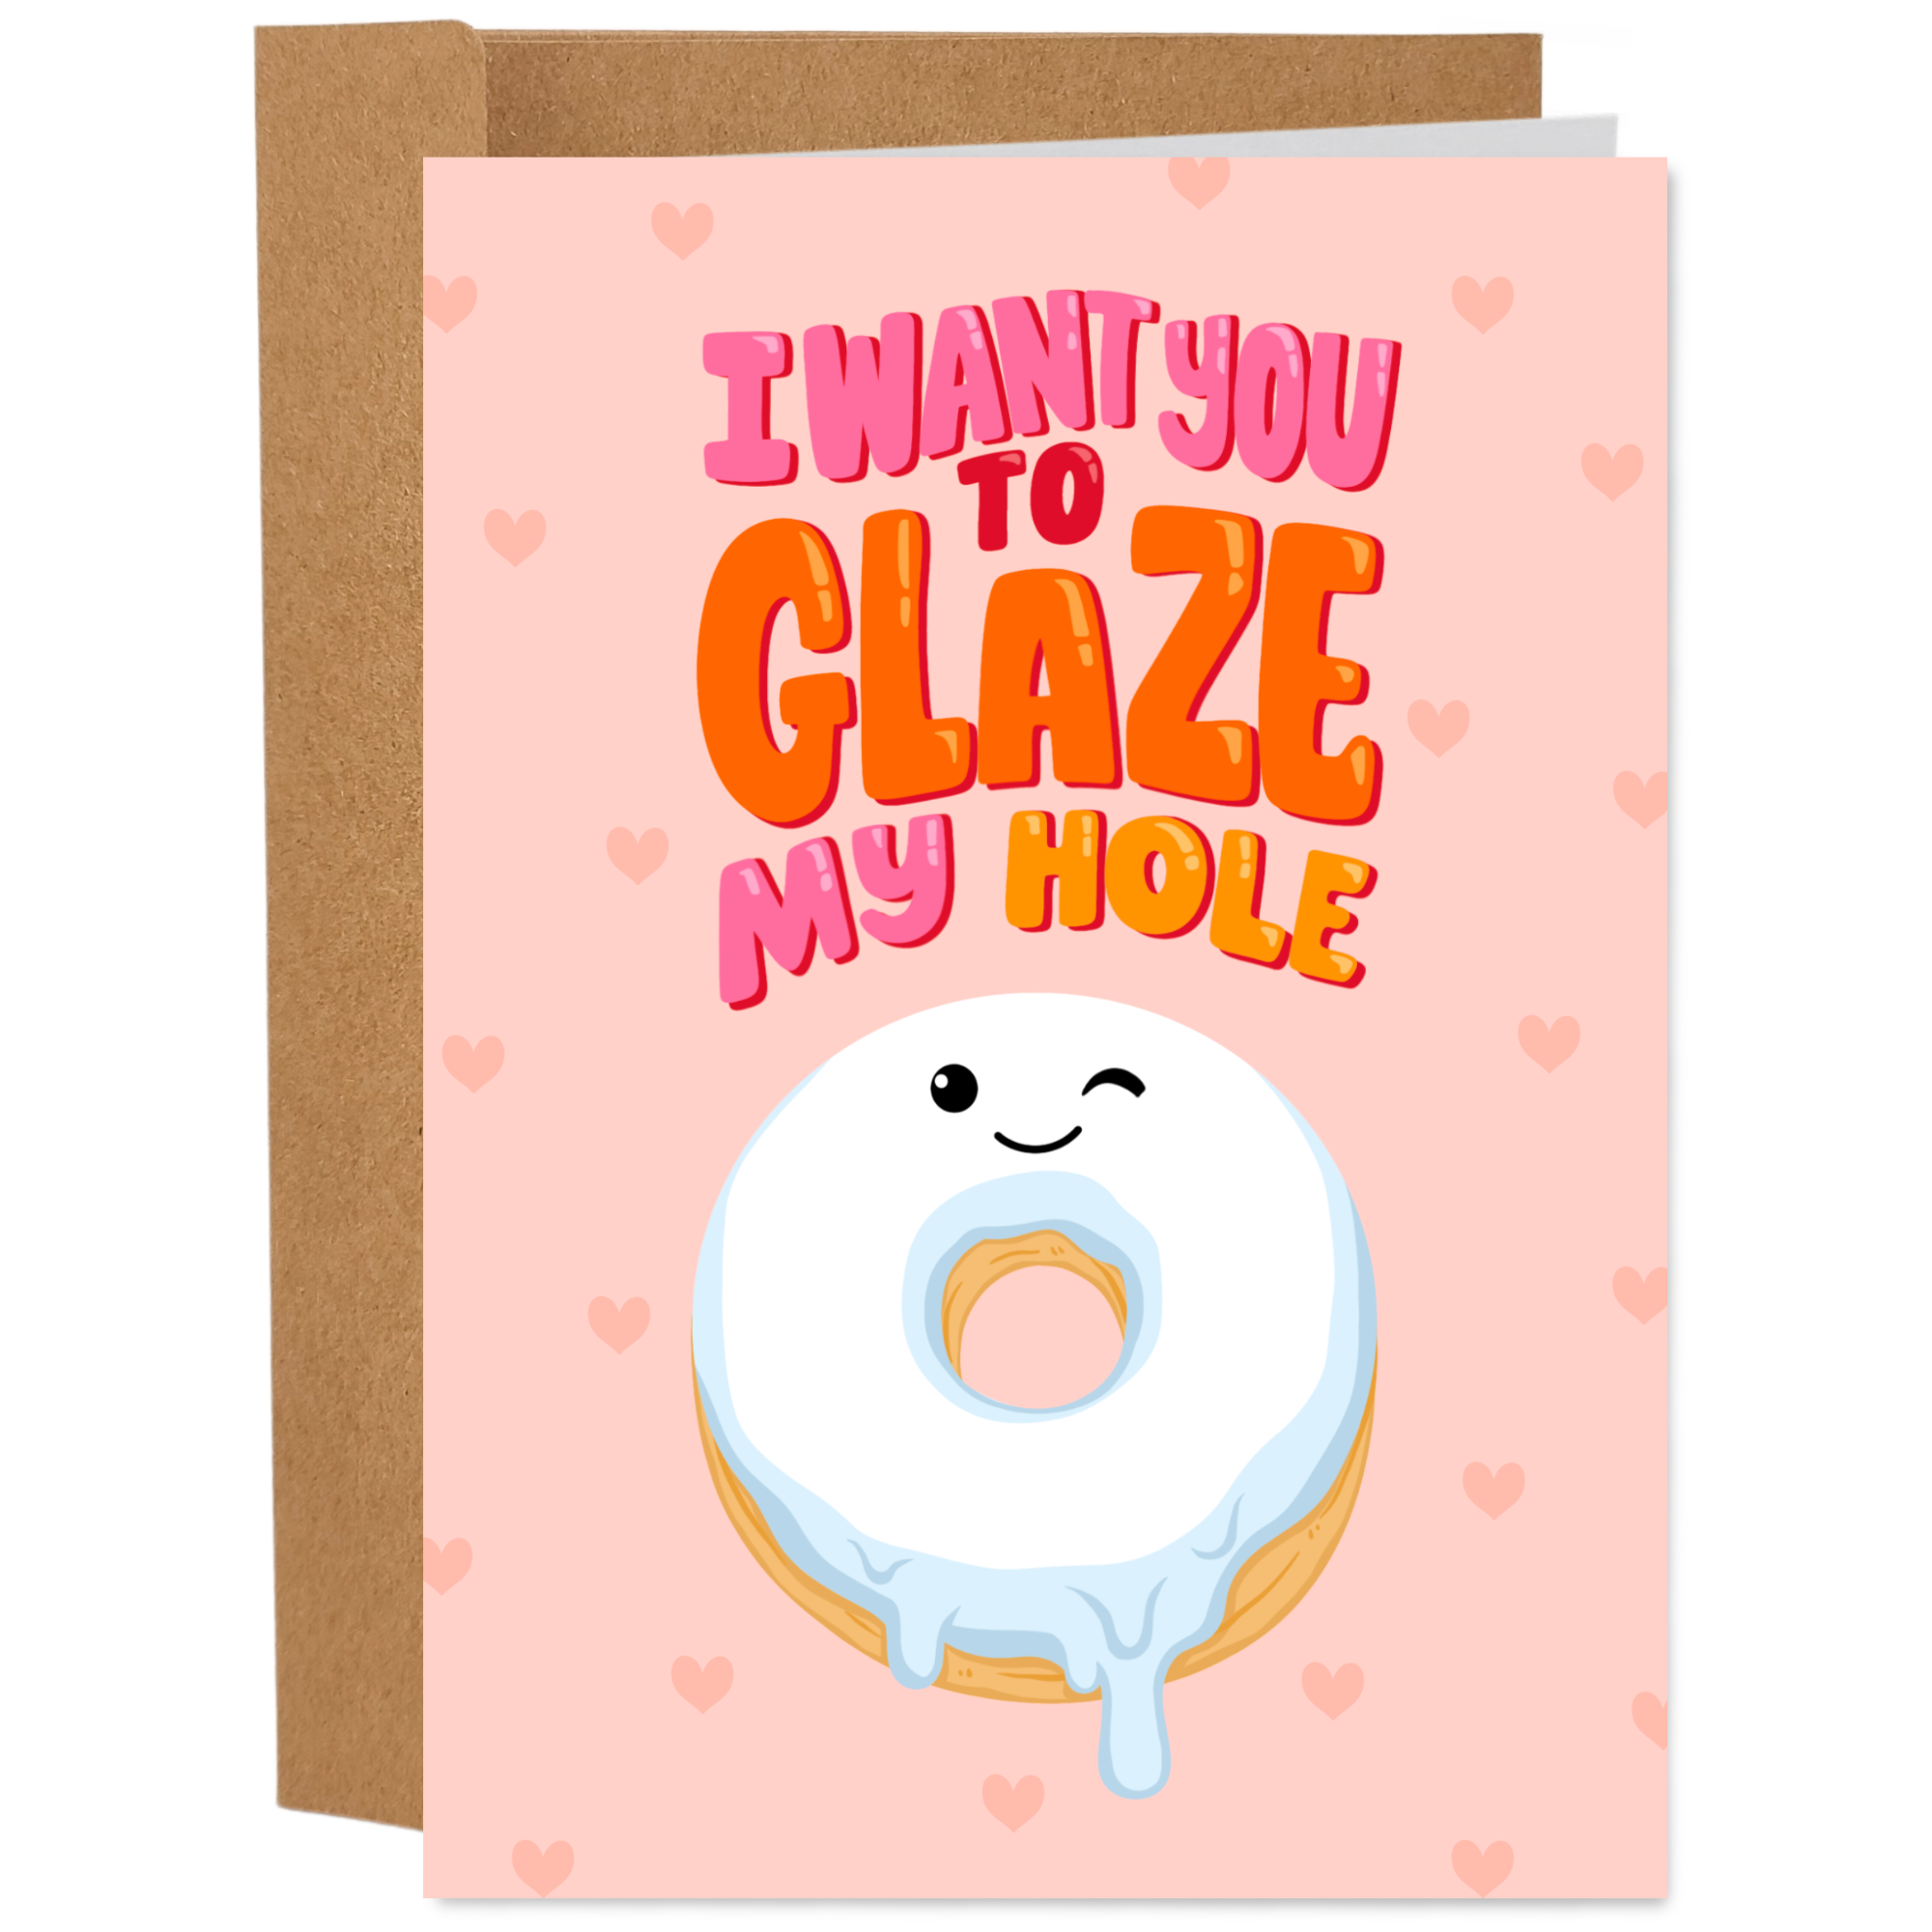 Sleazy Greetings - Glaze My Hole Card